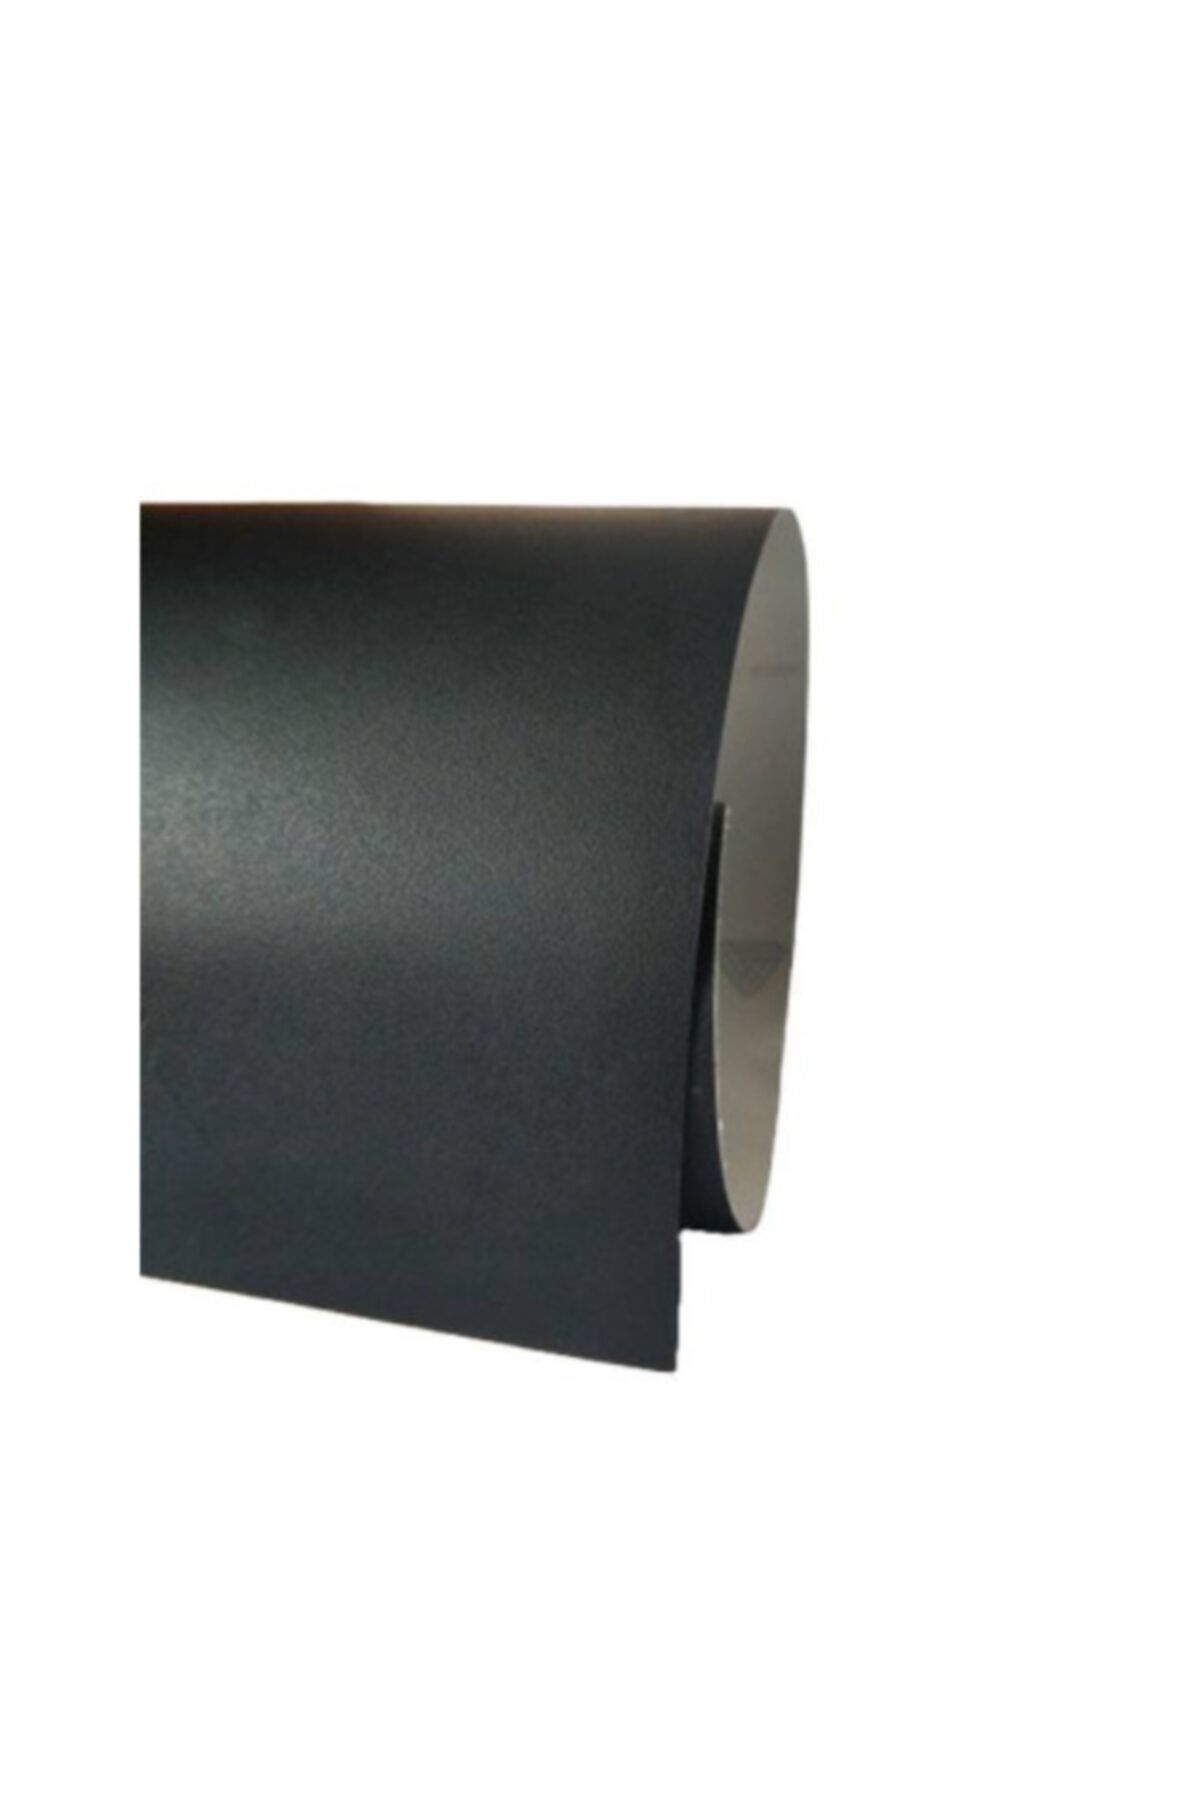 Momo Kapı Direk Dodik Lip Kaplama Tırtıklı Mat Siyah Kaplama Folyosu (100cmx10cm)